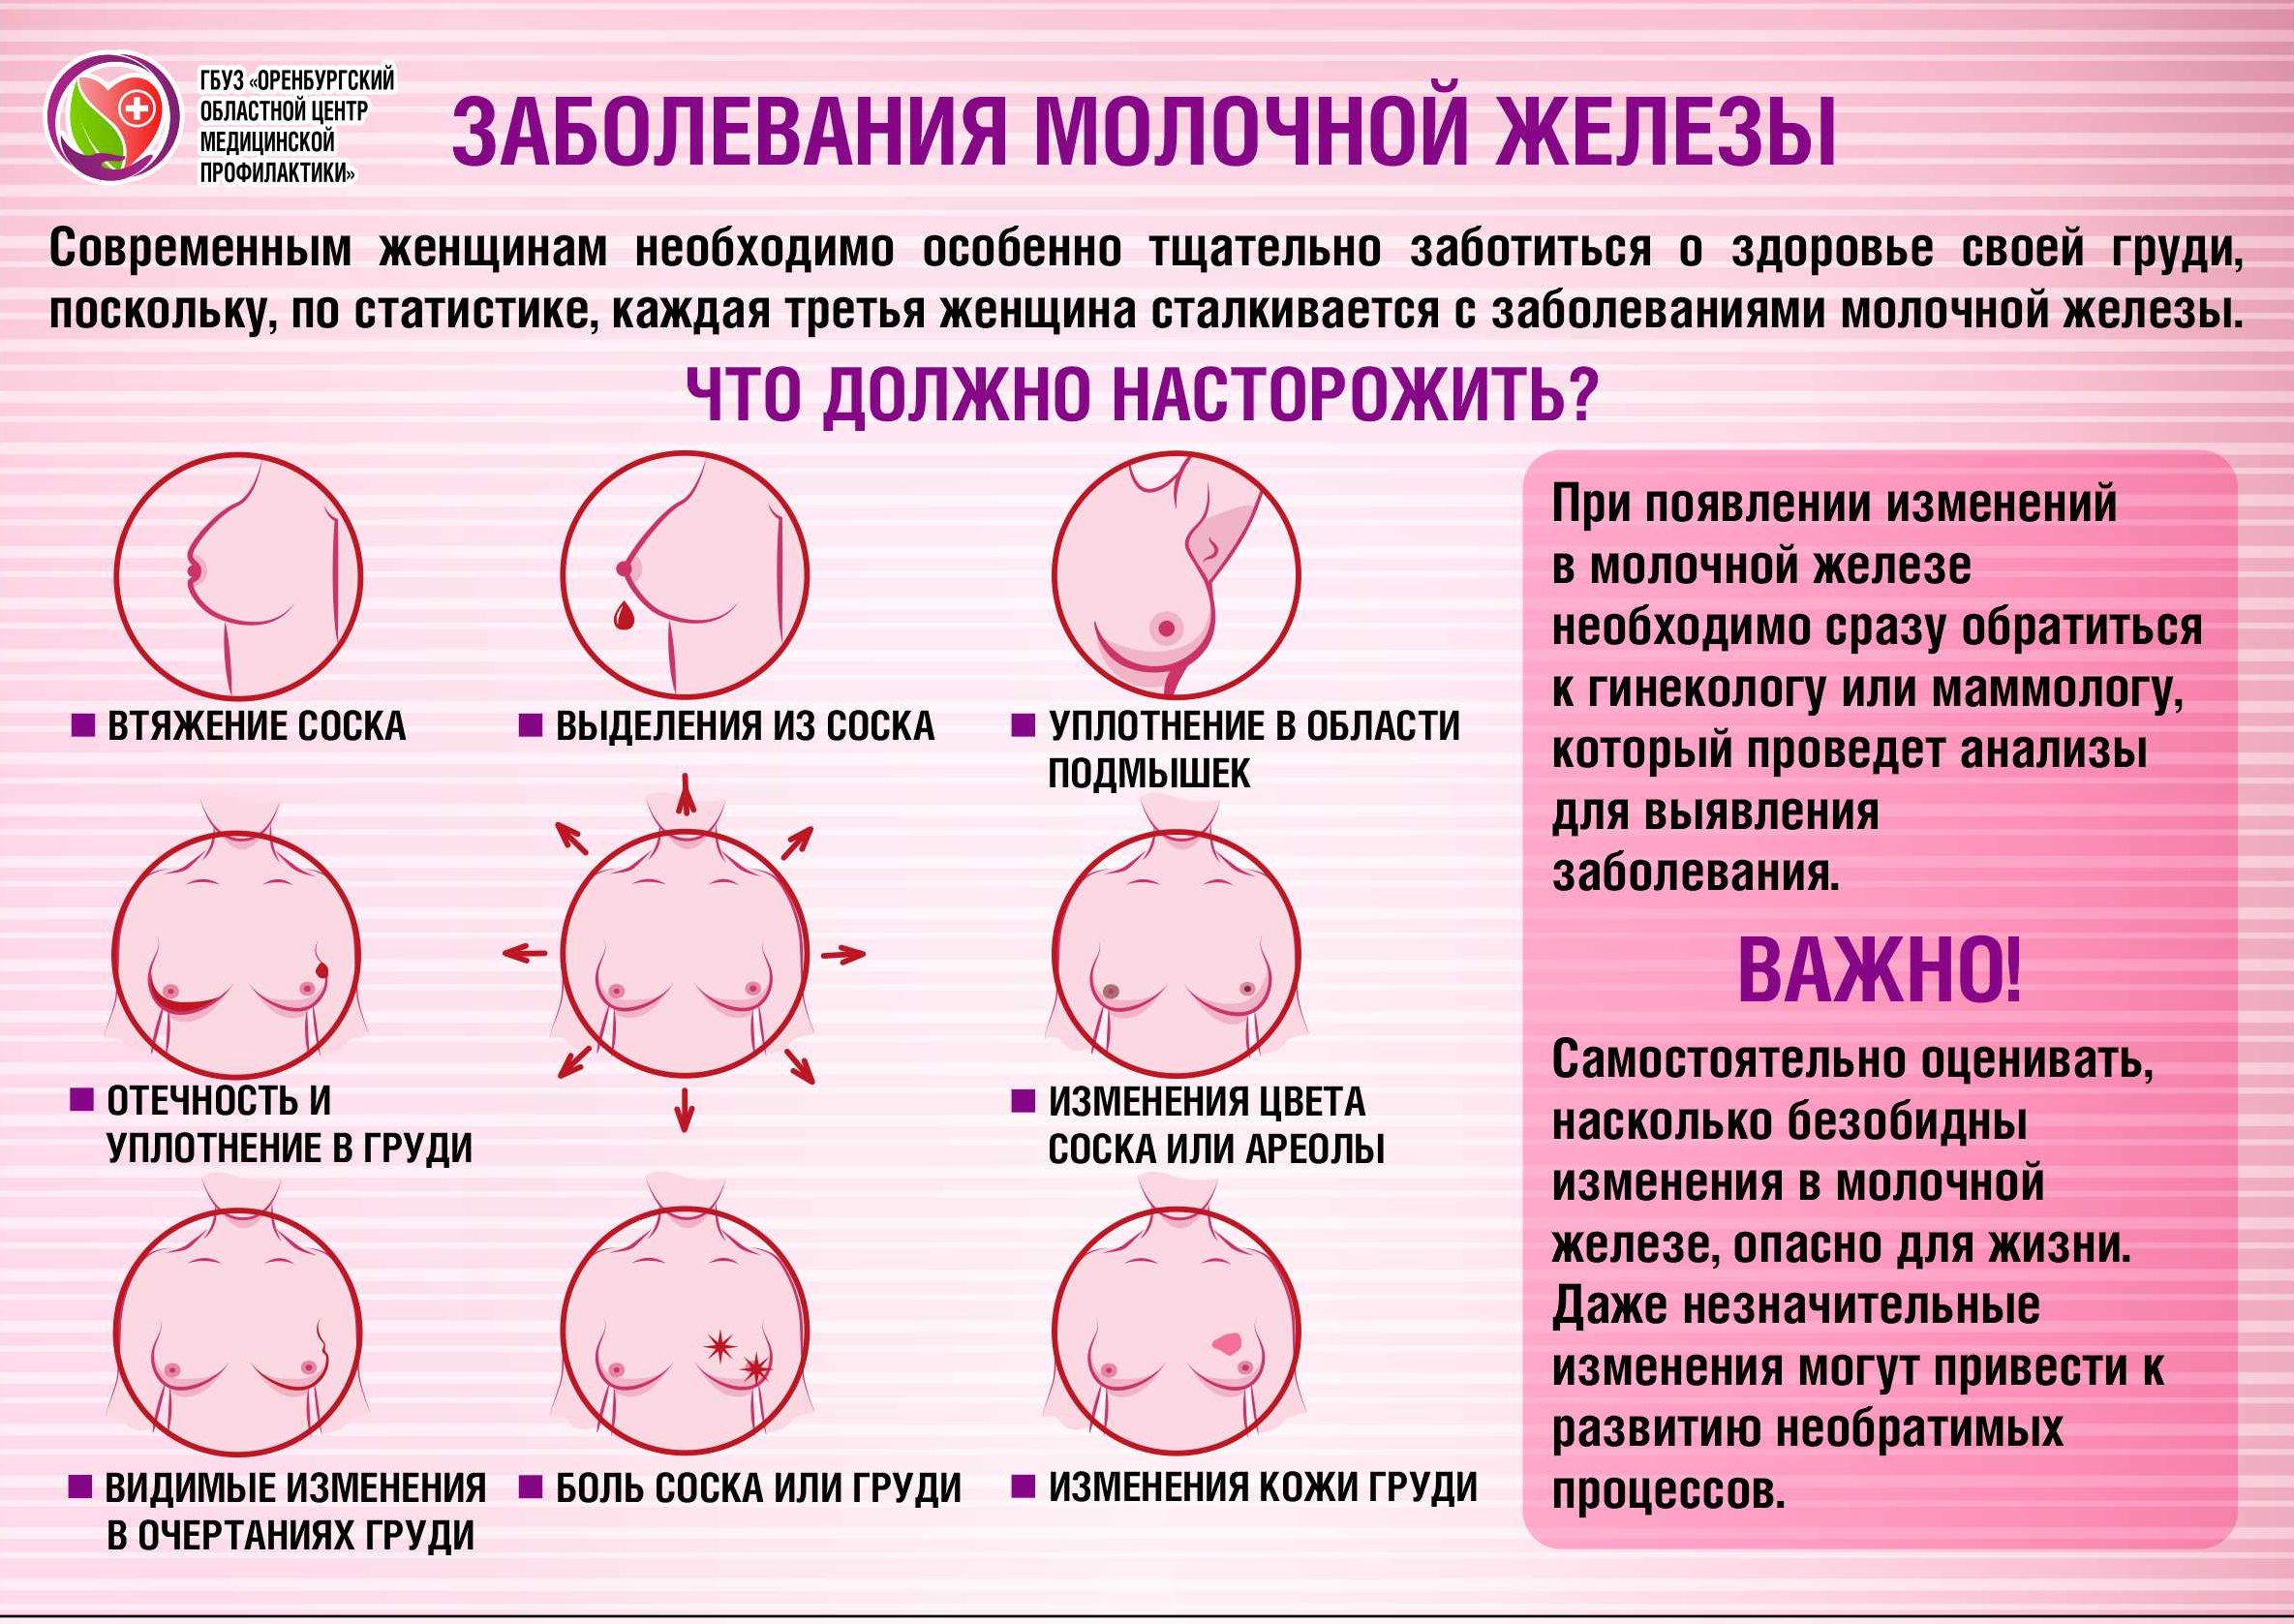 Всемирный день борьбы с раком груди | Оренбургский областной центр  общественного здоровья и медицинской профилактики